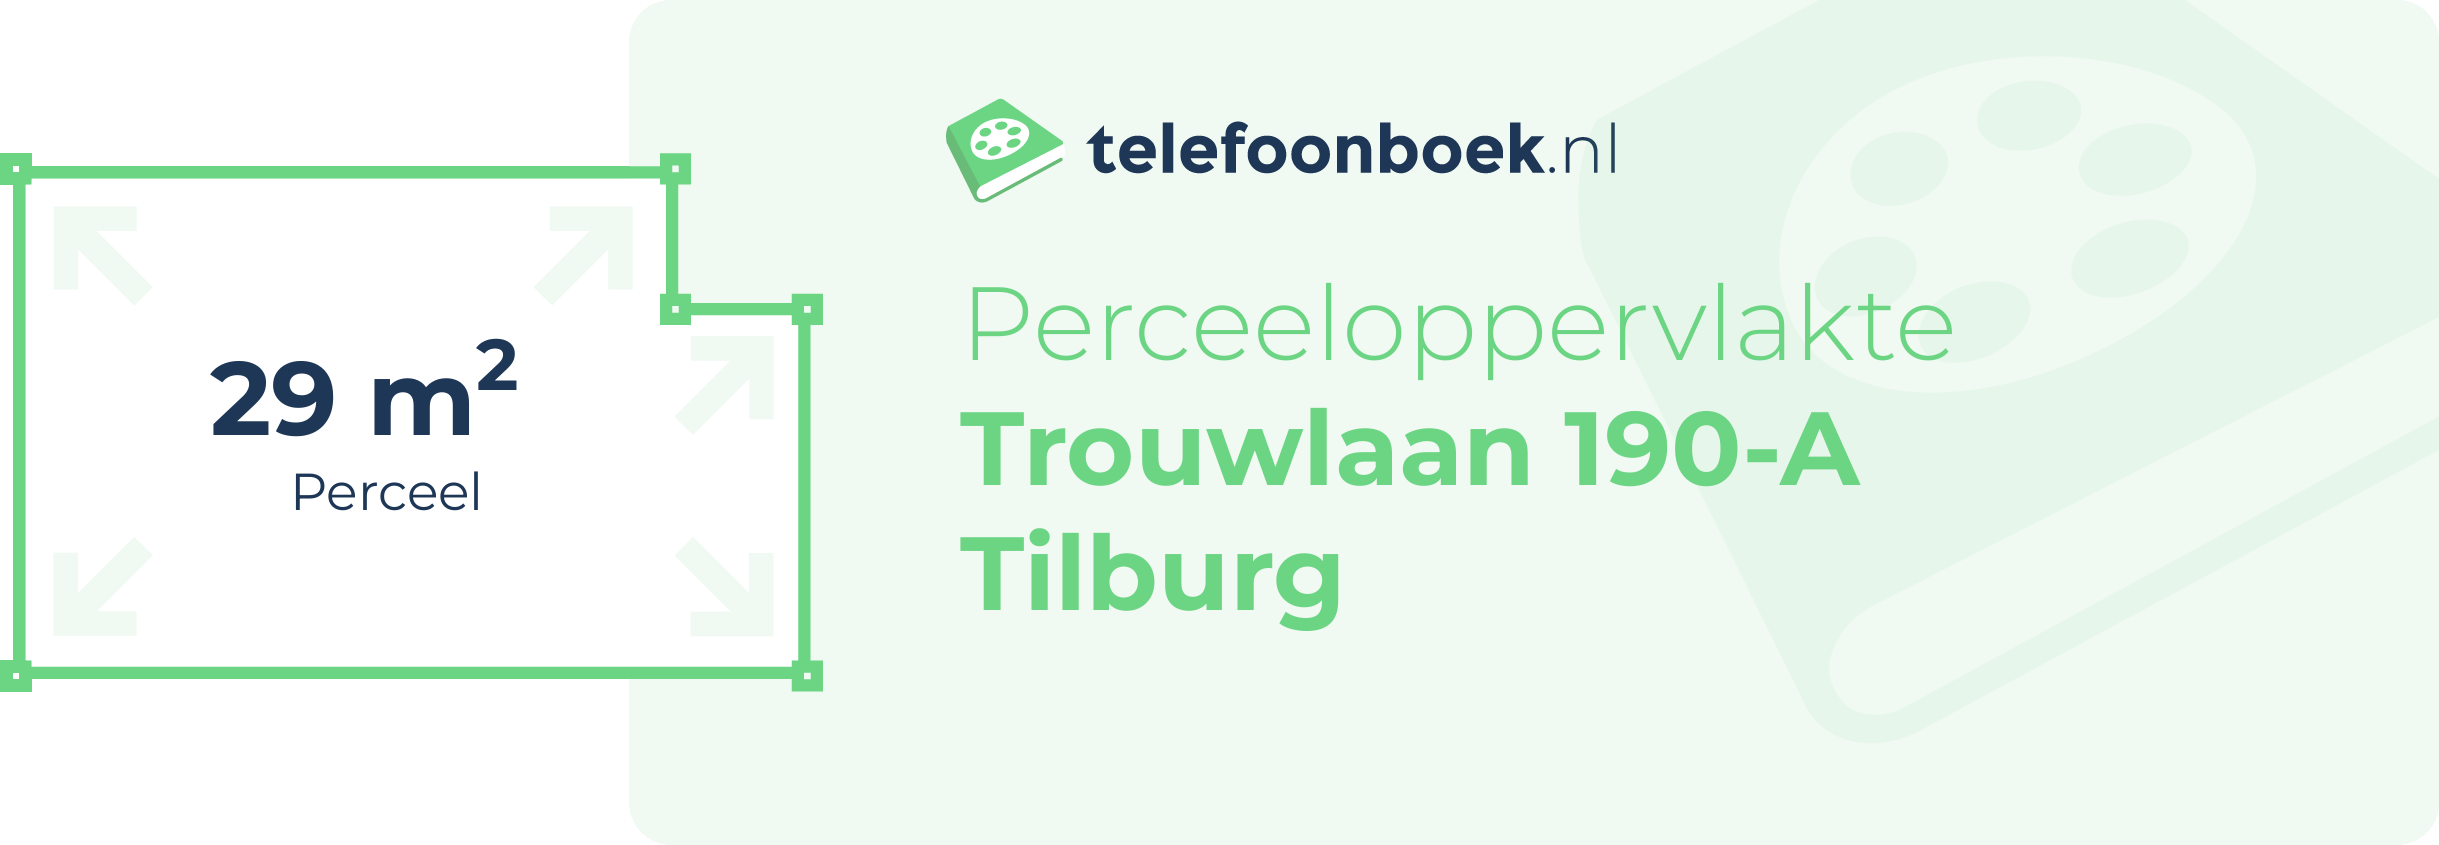 Perceeloppervlakte Trouwlaan 190-A Tilburg